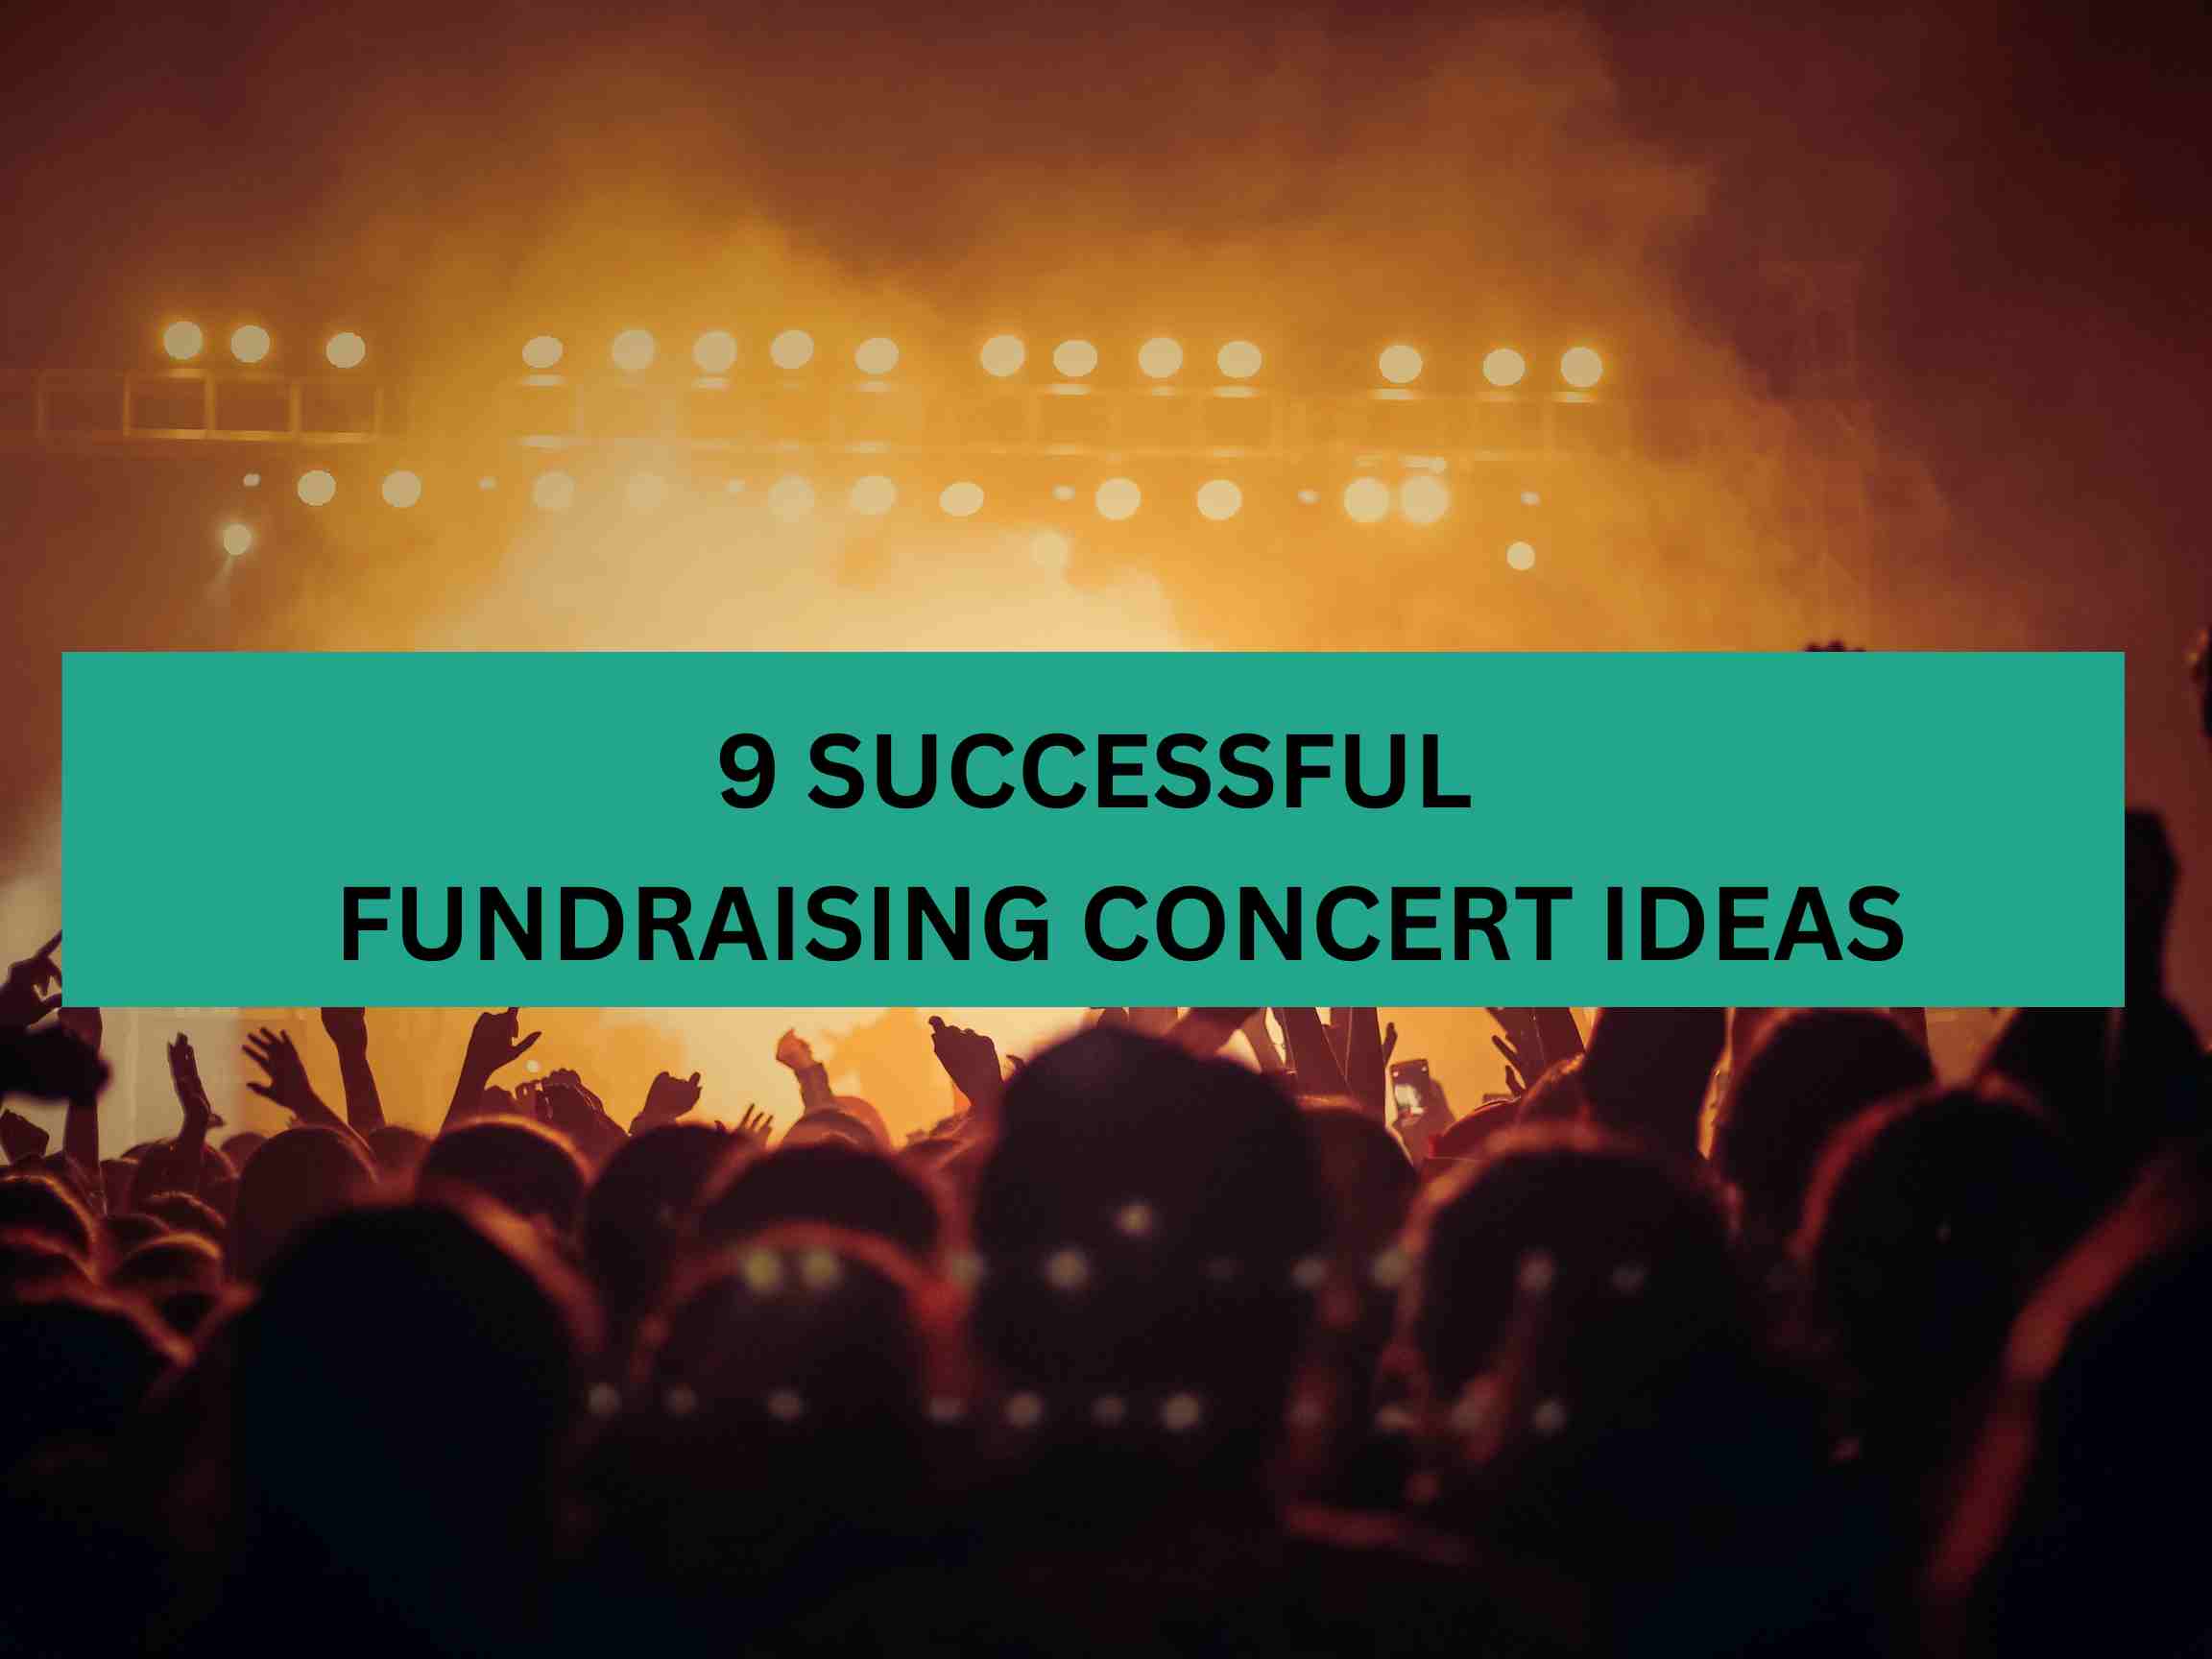 Fundraising concert ideas for maximum profitability